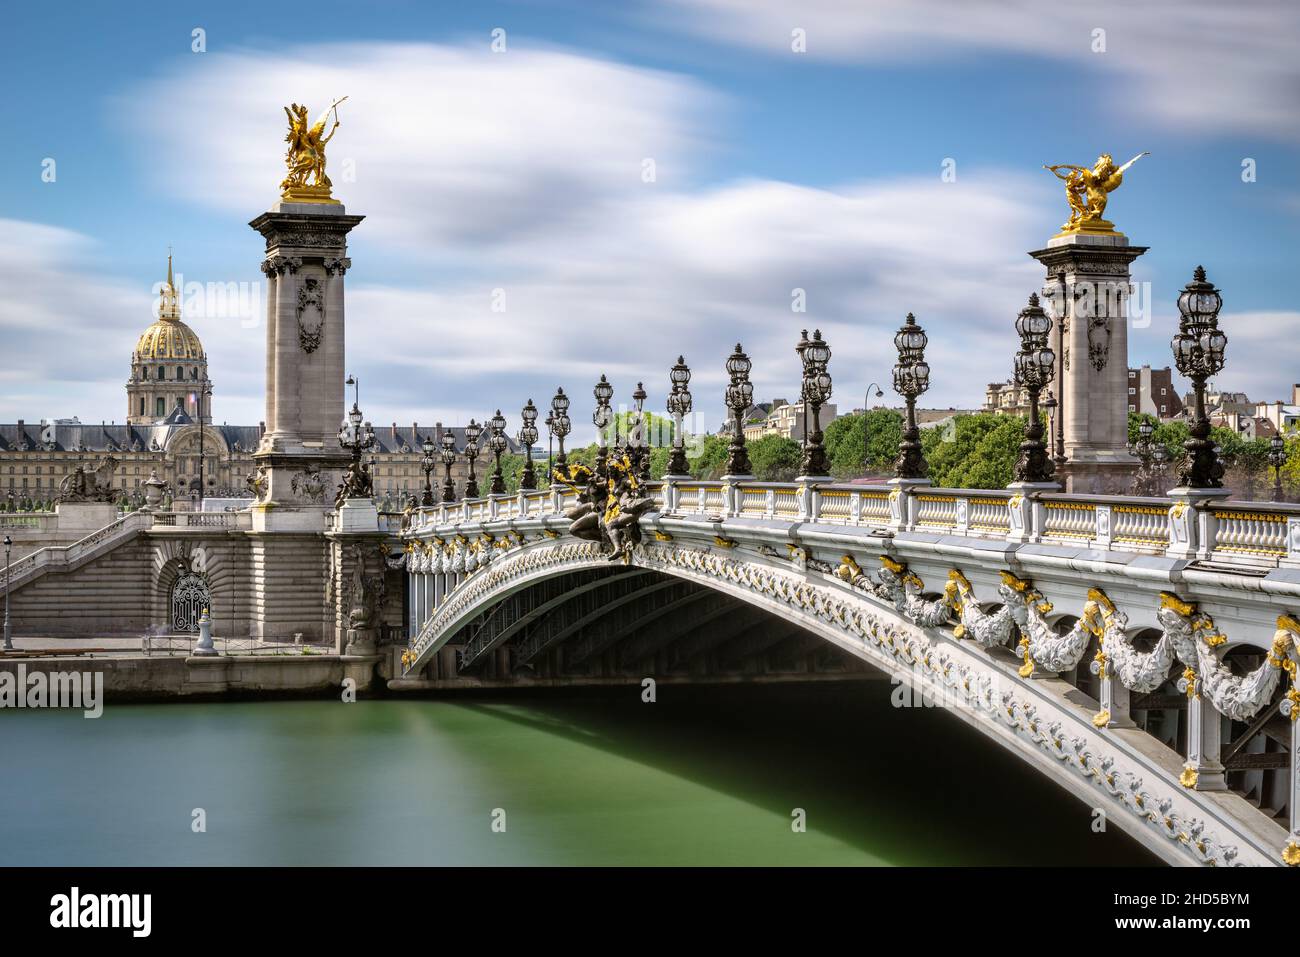 Pont Alexandre III Pont sur la Seine avec vue sur les Invalides (site classé au patrimoine mondial de l'UNESCO).7th arrondissement, Paris, France Banque D'Images